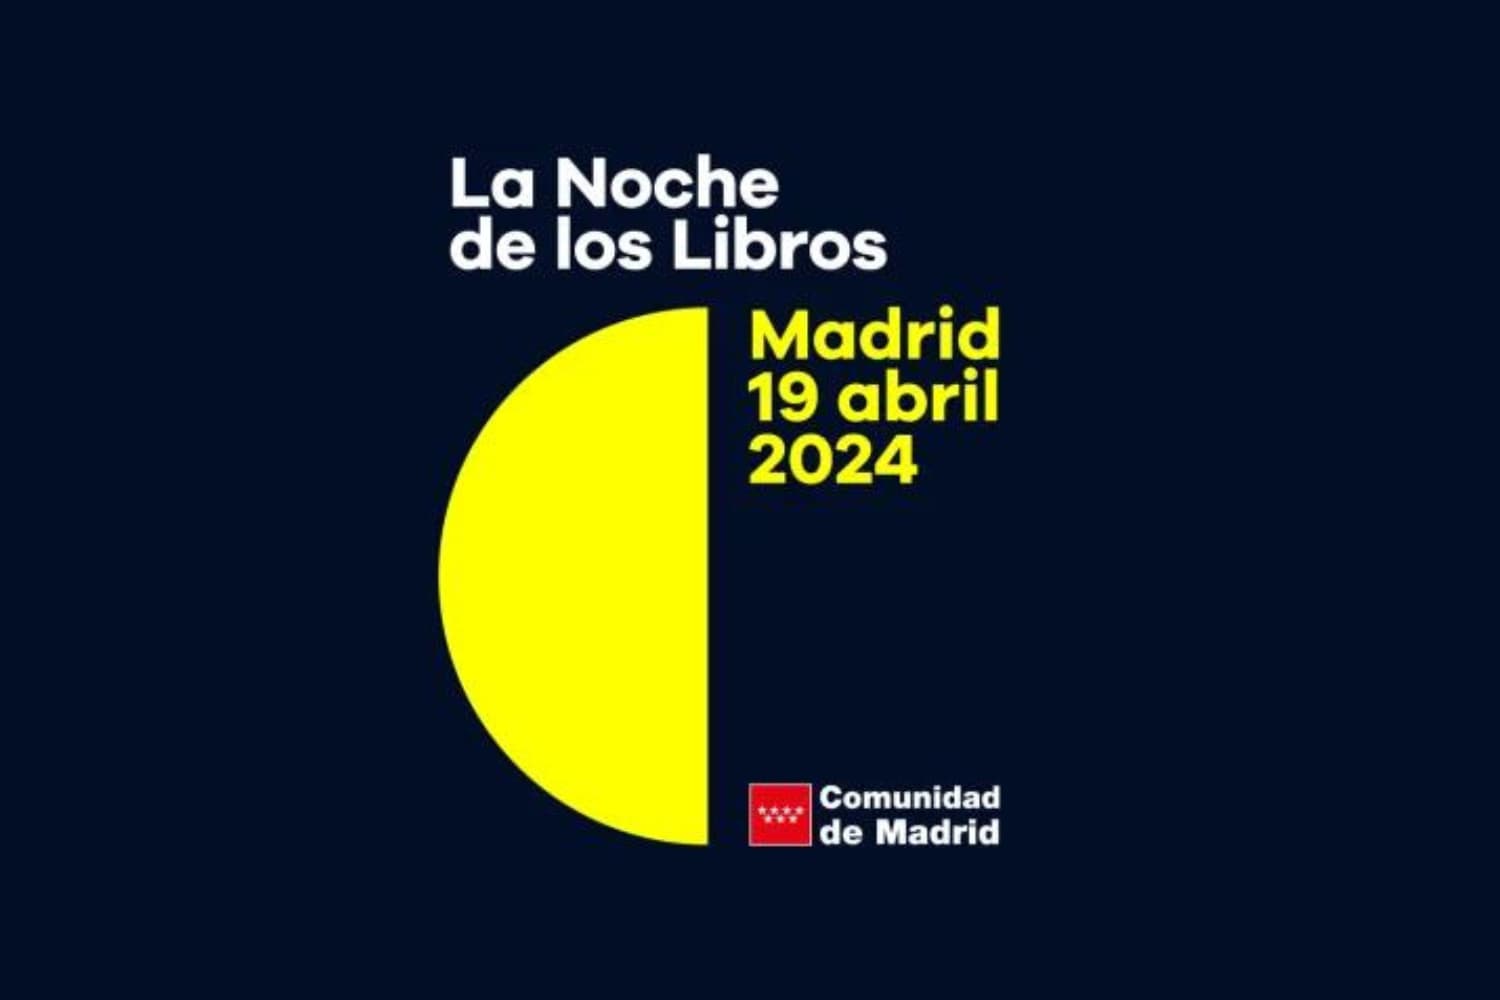 La Noche de los Libros 2024 (The Night of the Books)